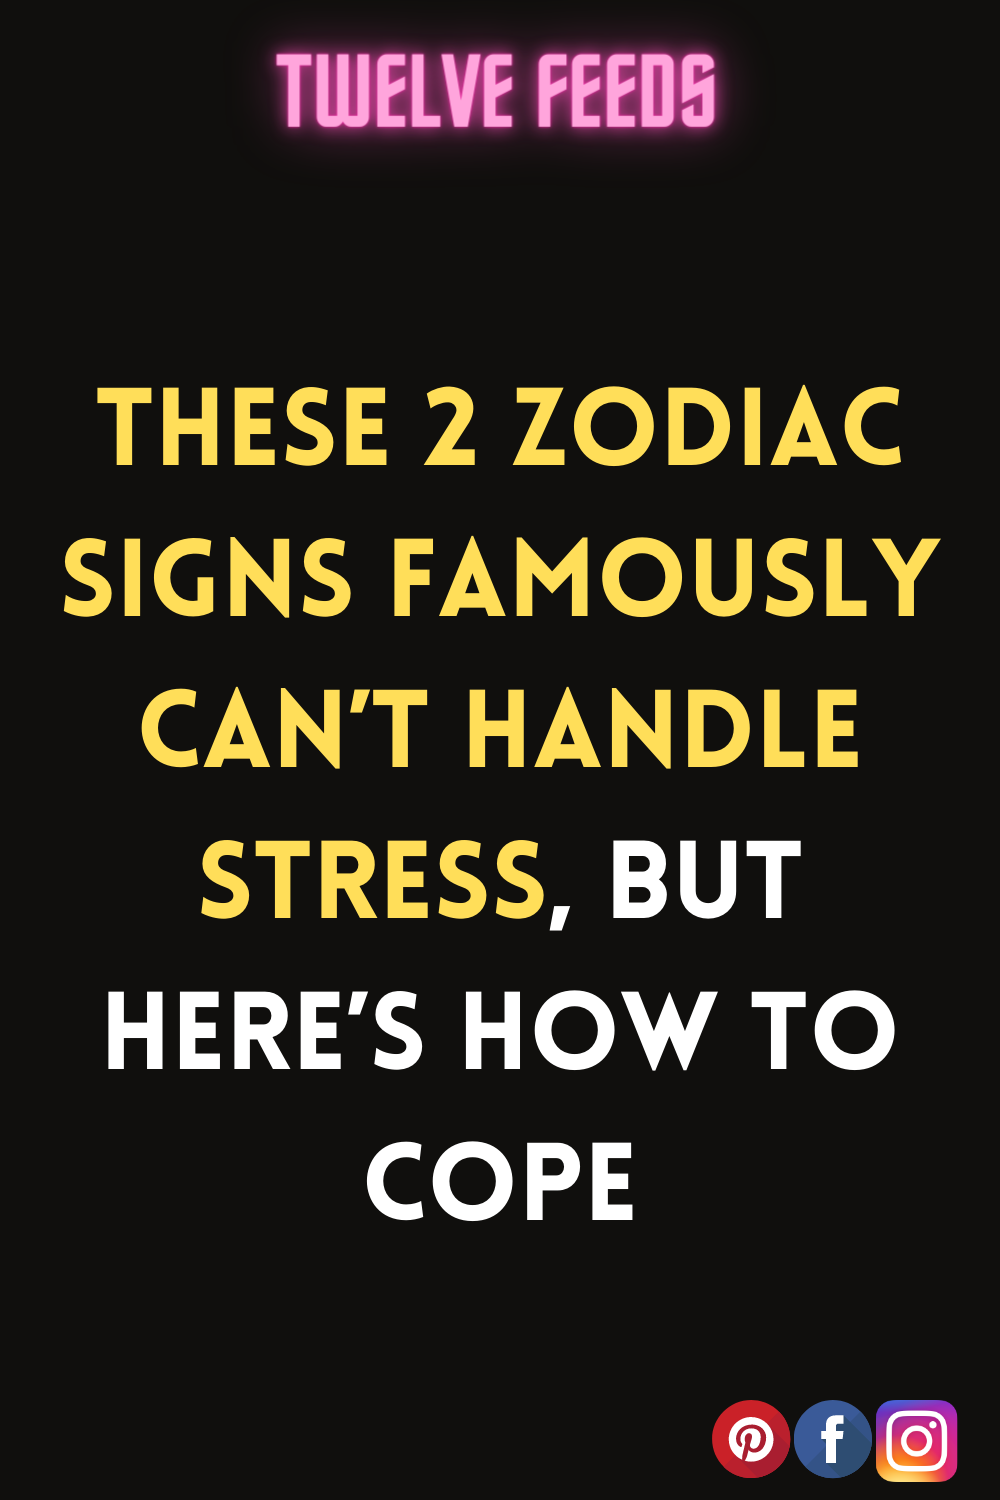 #Astrology2022 #horoscope2022 #ZodiacSigns2022 #zodiac #astrology #zodiacsigns #horoscope #capricorn #virgo #aries #leo #scorpio #pisces #libra #cancer #taurus #aquarius #gemini #zodiacmemes #sagittarius #horoscopes #love #zodiacsign #zodiacposts #astrologymemes #zodiacfacts #astrologyposts #tarot #zodiacs #art #zodiaco #zodiacpost #bhfyp#astrologer #astro #astrologysigns #zodiaclove